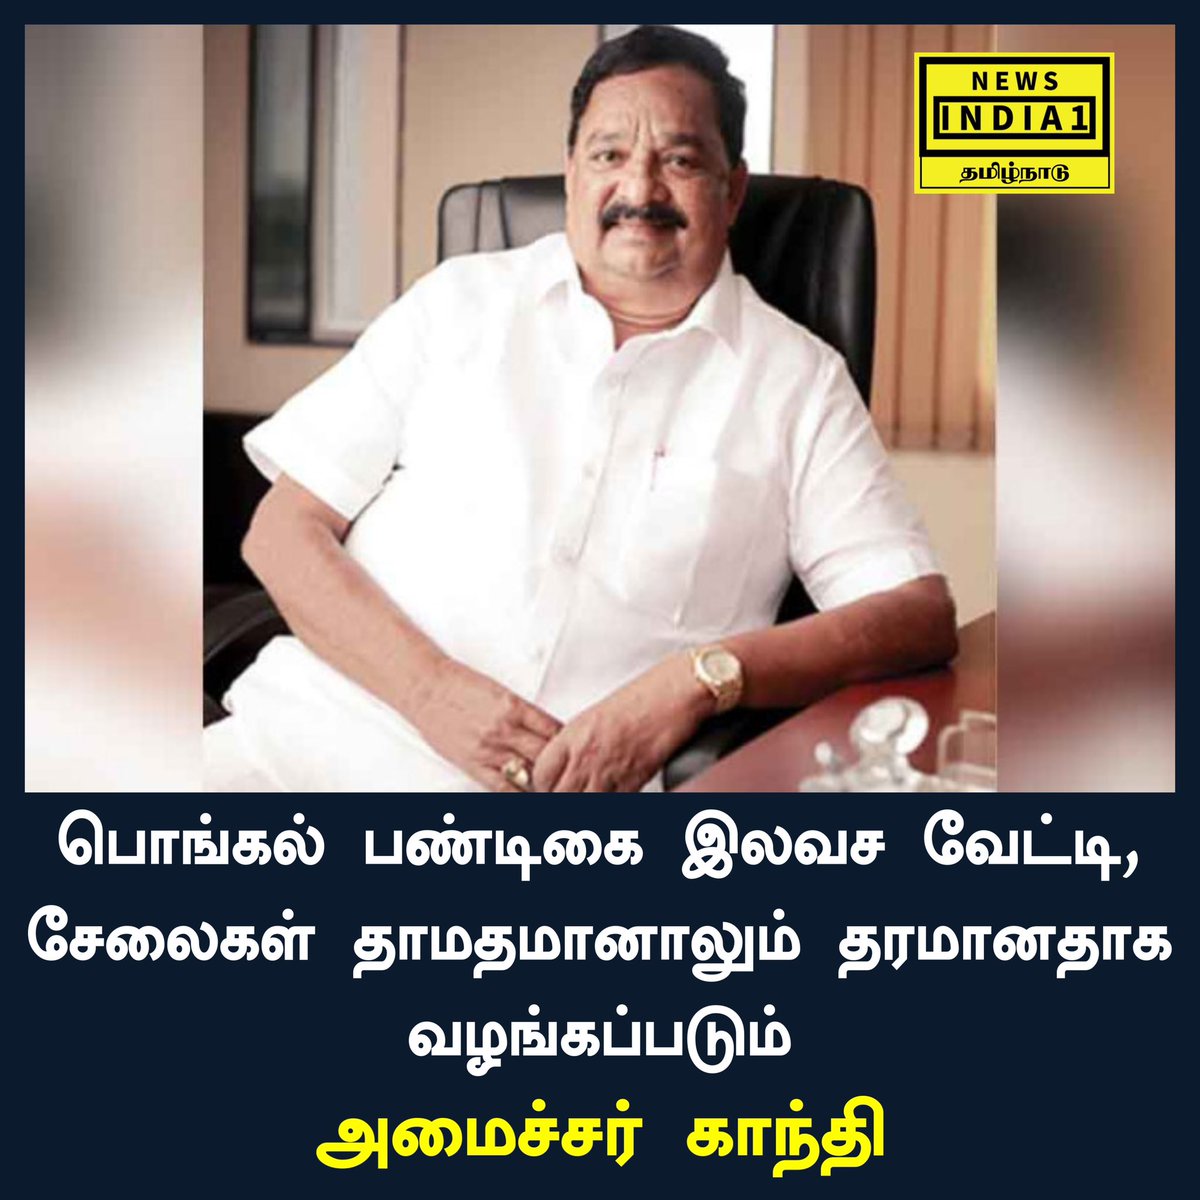 பொங்கல் பண்டிகை இலவச வேட்டி, சேலைகள் | தாமதமானாலும் தரமானதாக வழங்கப்படும்: அமைச்சர் காந்தி

#DMK #Gandhi #ministergandhi #tngovt #MKstalin #PongalGift #Tamilnadu #Pongal2023 #tamil #tamilnadunews #tamilnewsupdates